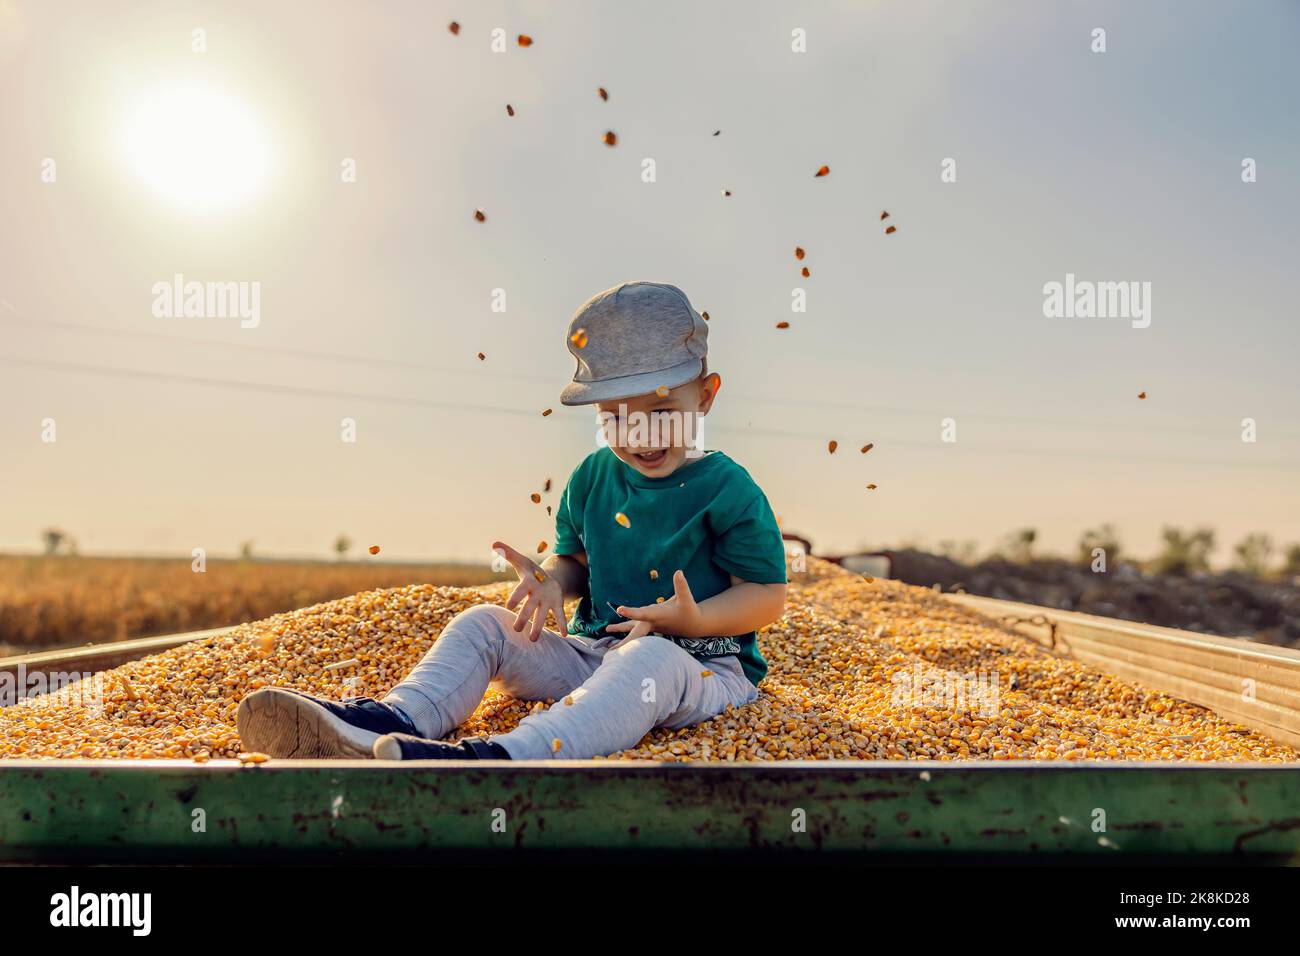 Un petit garçon de fermier excité est assis dans une remorque de tracteur pleine de grains de maïs et de lancer des grains dans l'air. Le petit assistant est assis sur le dur de maïs Banque D'Images